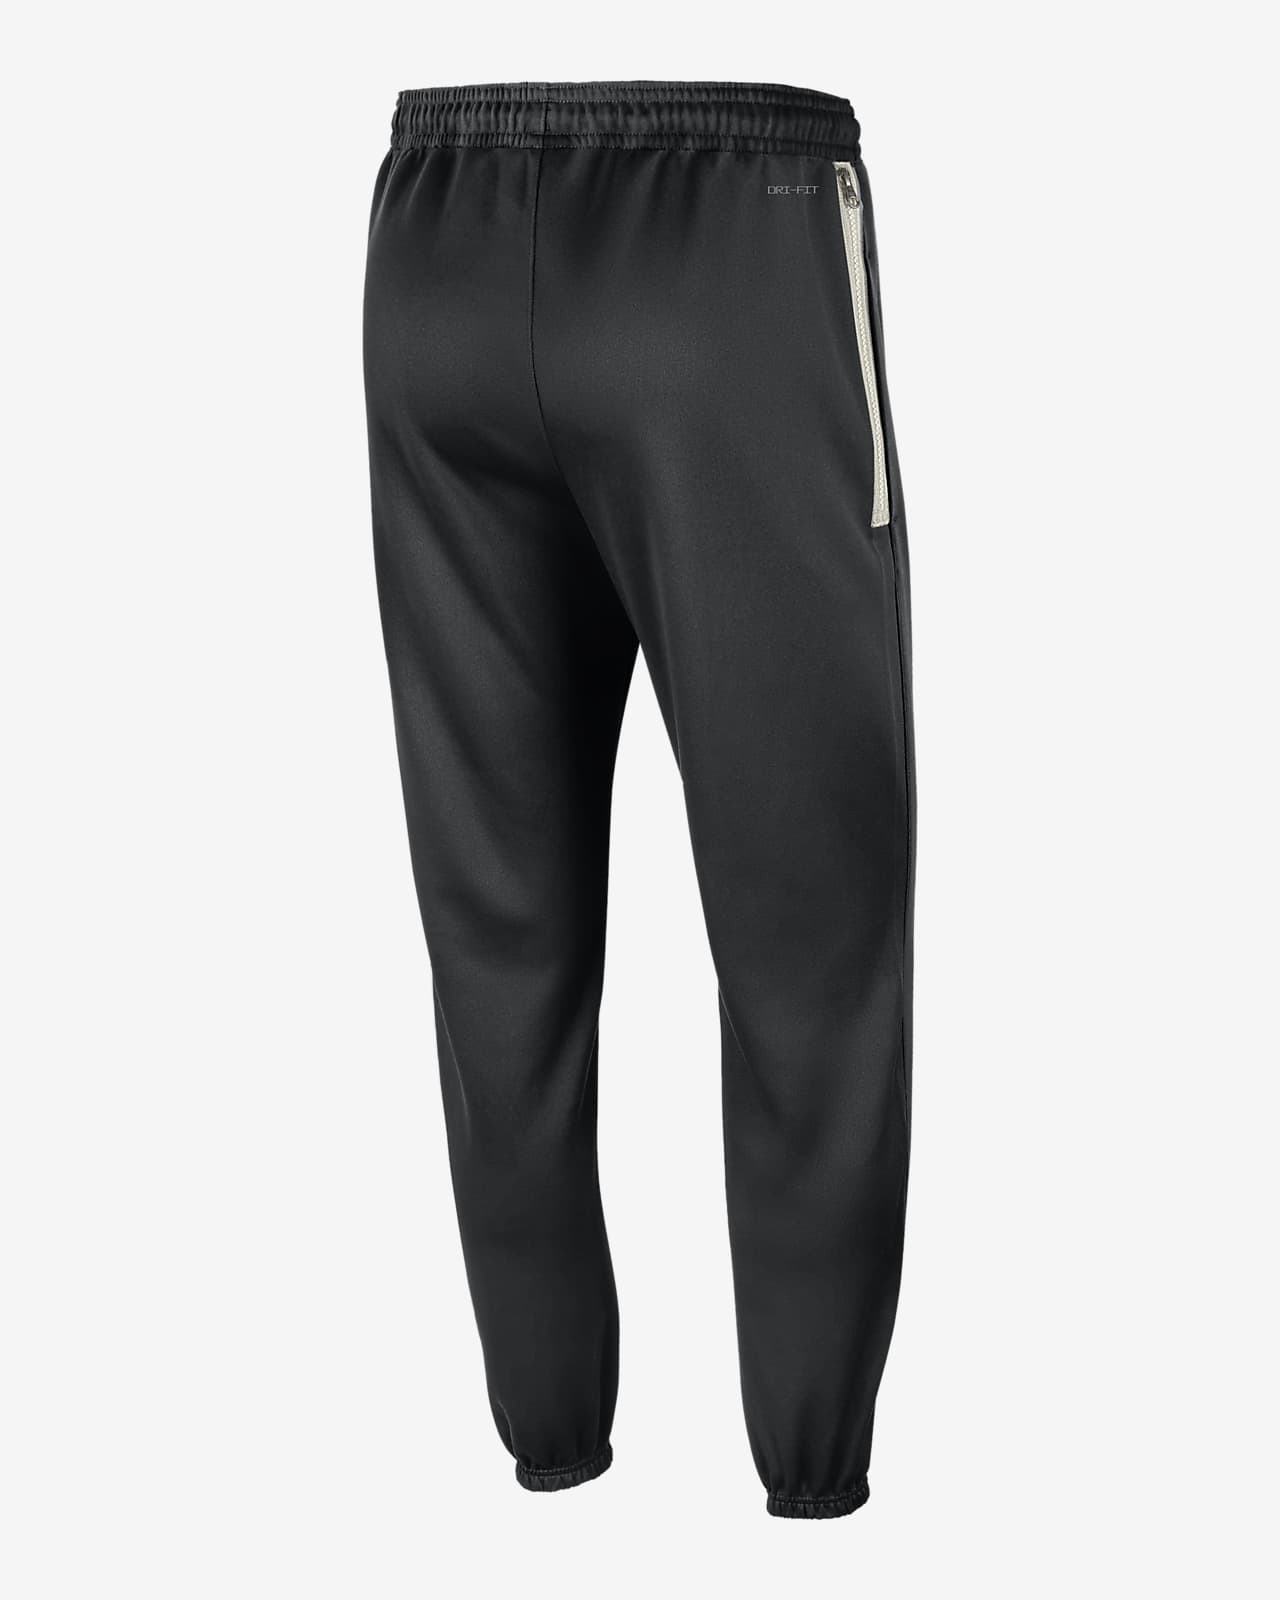 Nike Sportswear Men's Trousers. Nike CZ